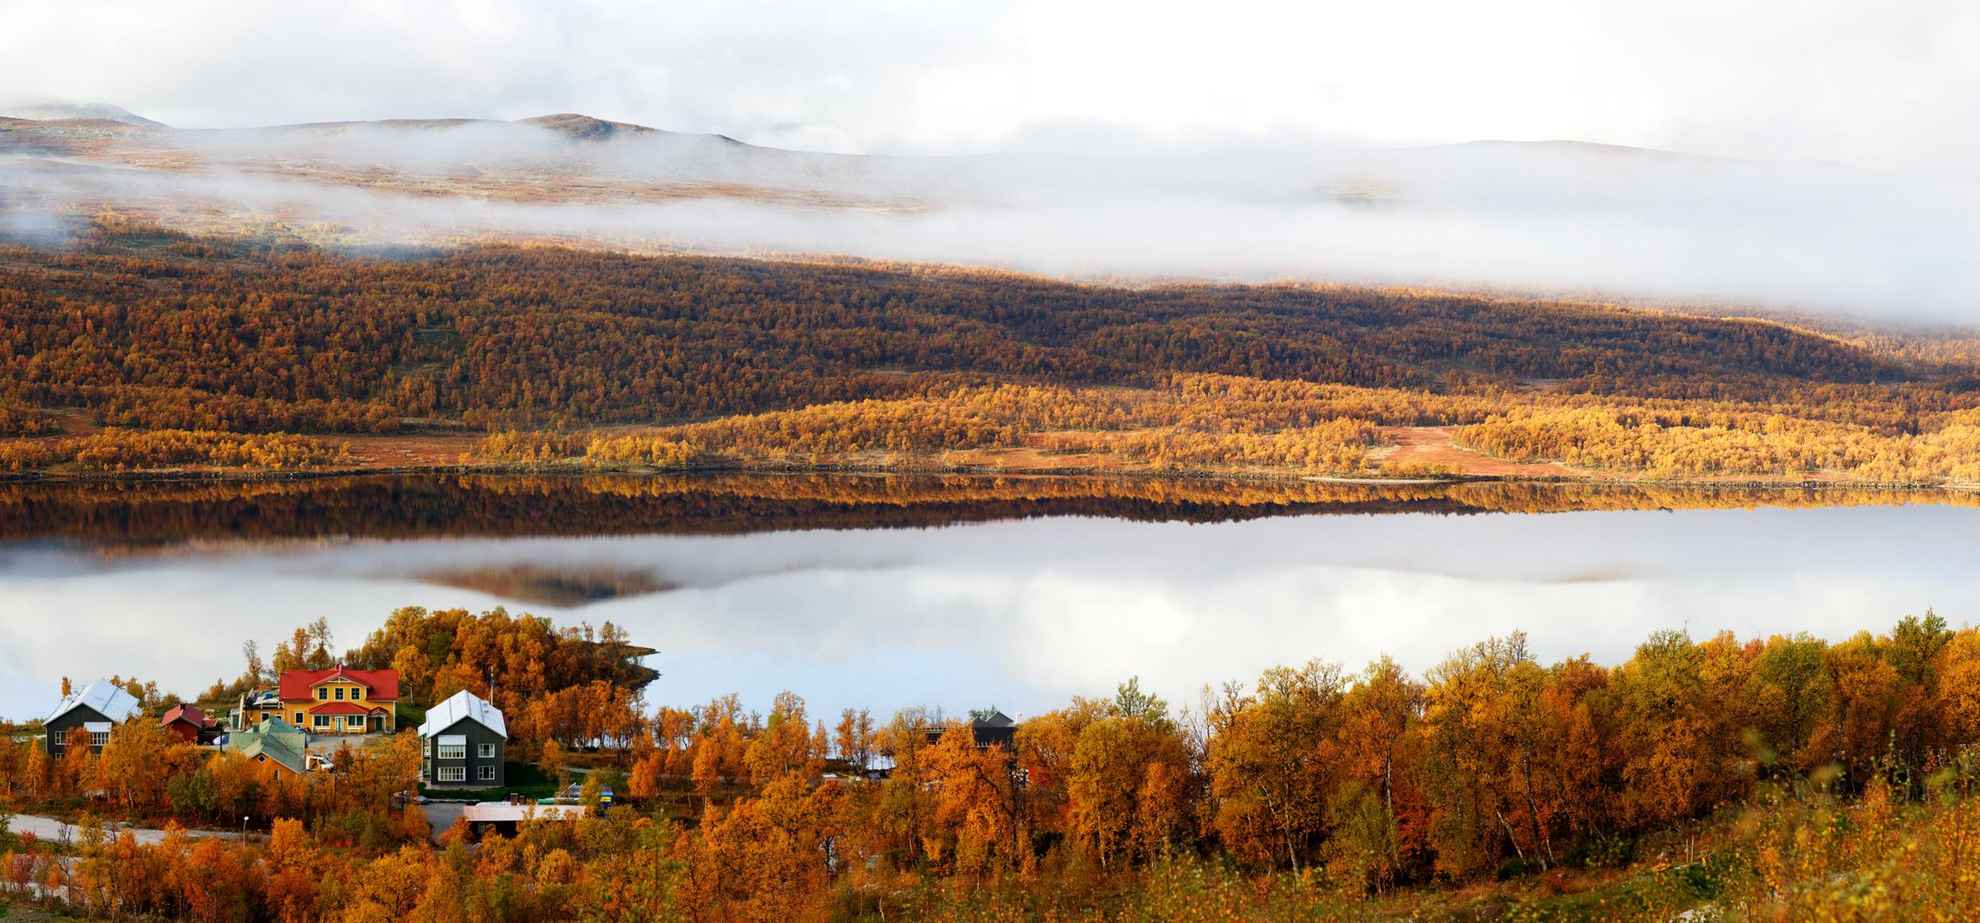 Une belle vue d'automne d'un hôtel au bord d'un lac dans les montagnes. Les arbres sont oranges et il y a du brouillard sur la montagne de l'autre côté du lac.